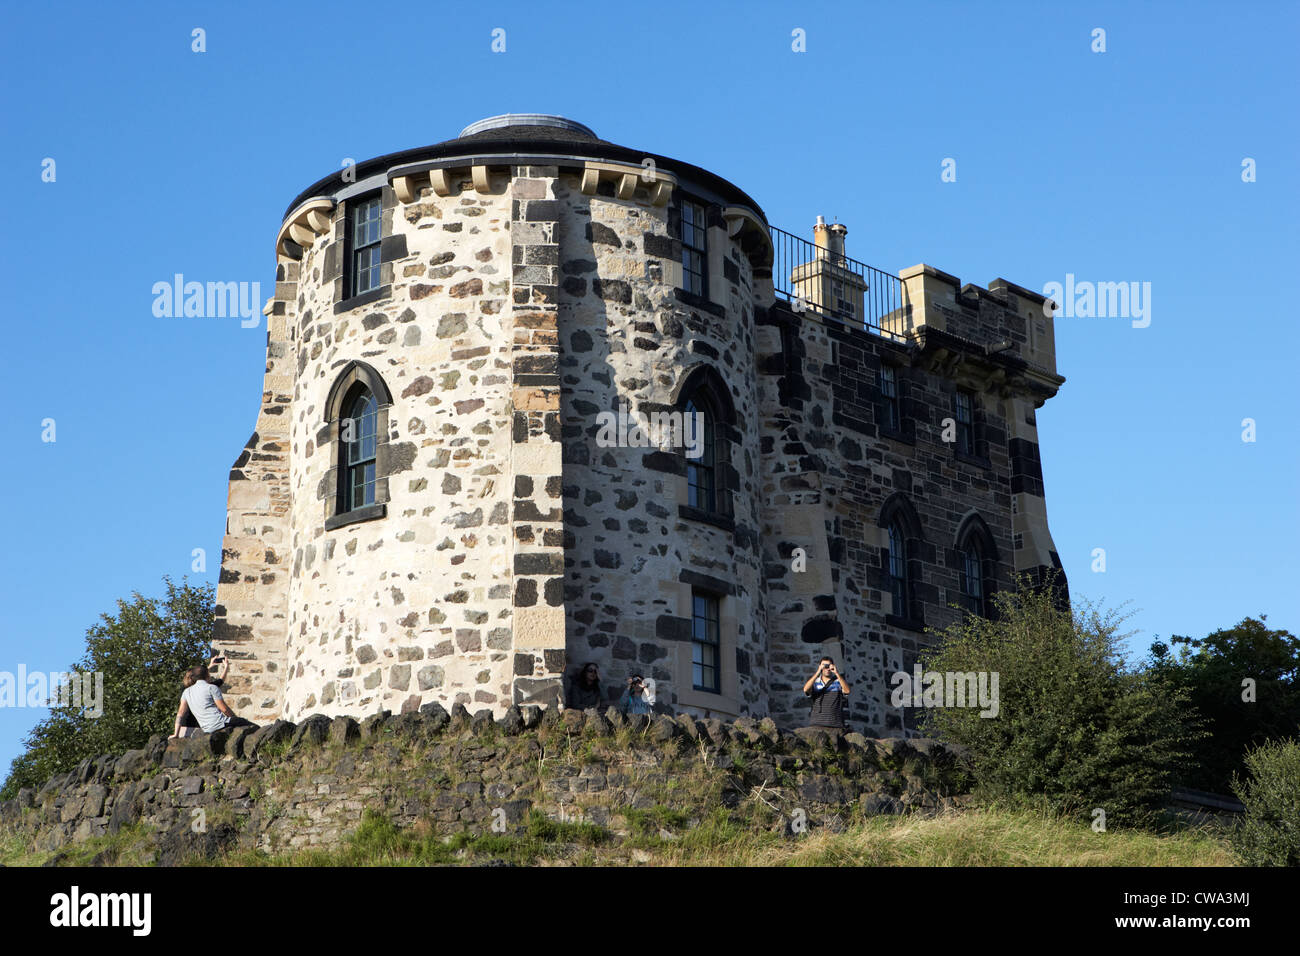 La torre gotica della città osservatorio scozzese di Edimburgo Regno Unito Regno Unito Foto Stock